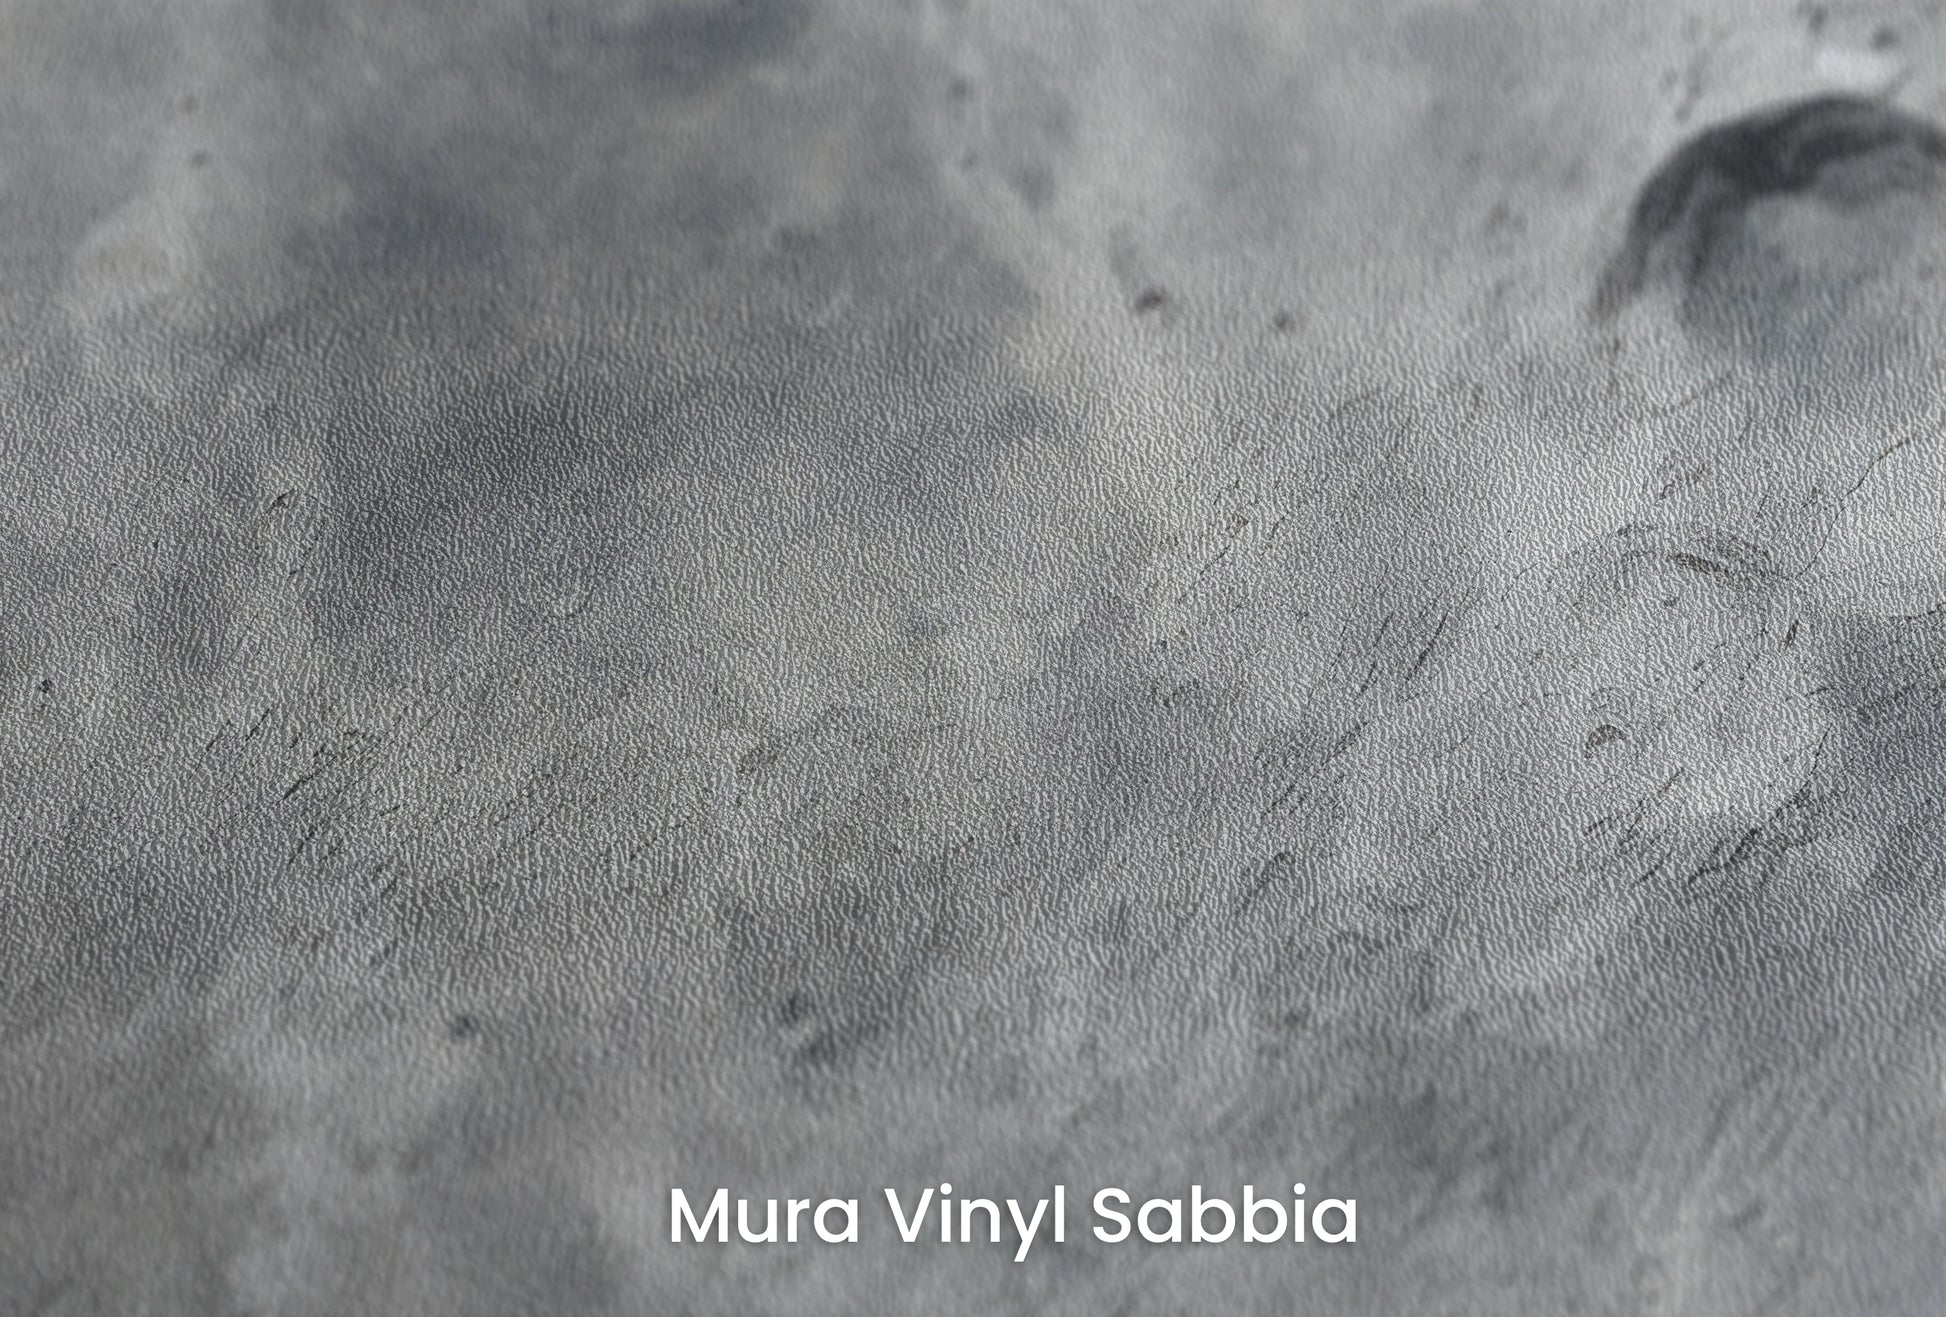 Zbliżenie na artystyczną fototapetę o nazwie Martian Elegance na podłożu Mura Vinyl Sabbia struktura grubego ziarna piasku.